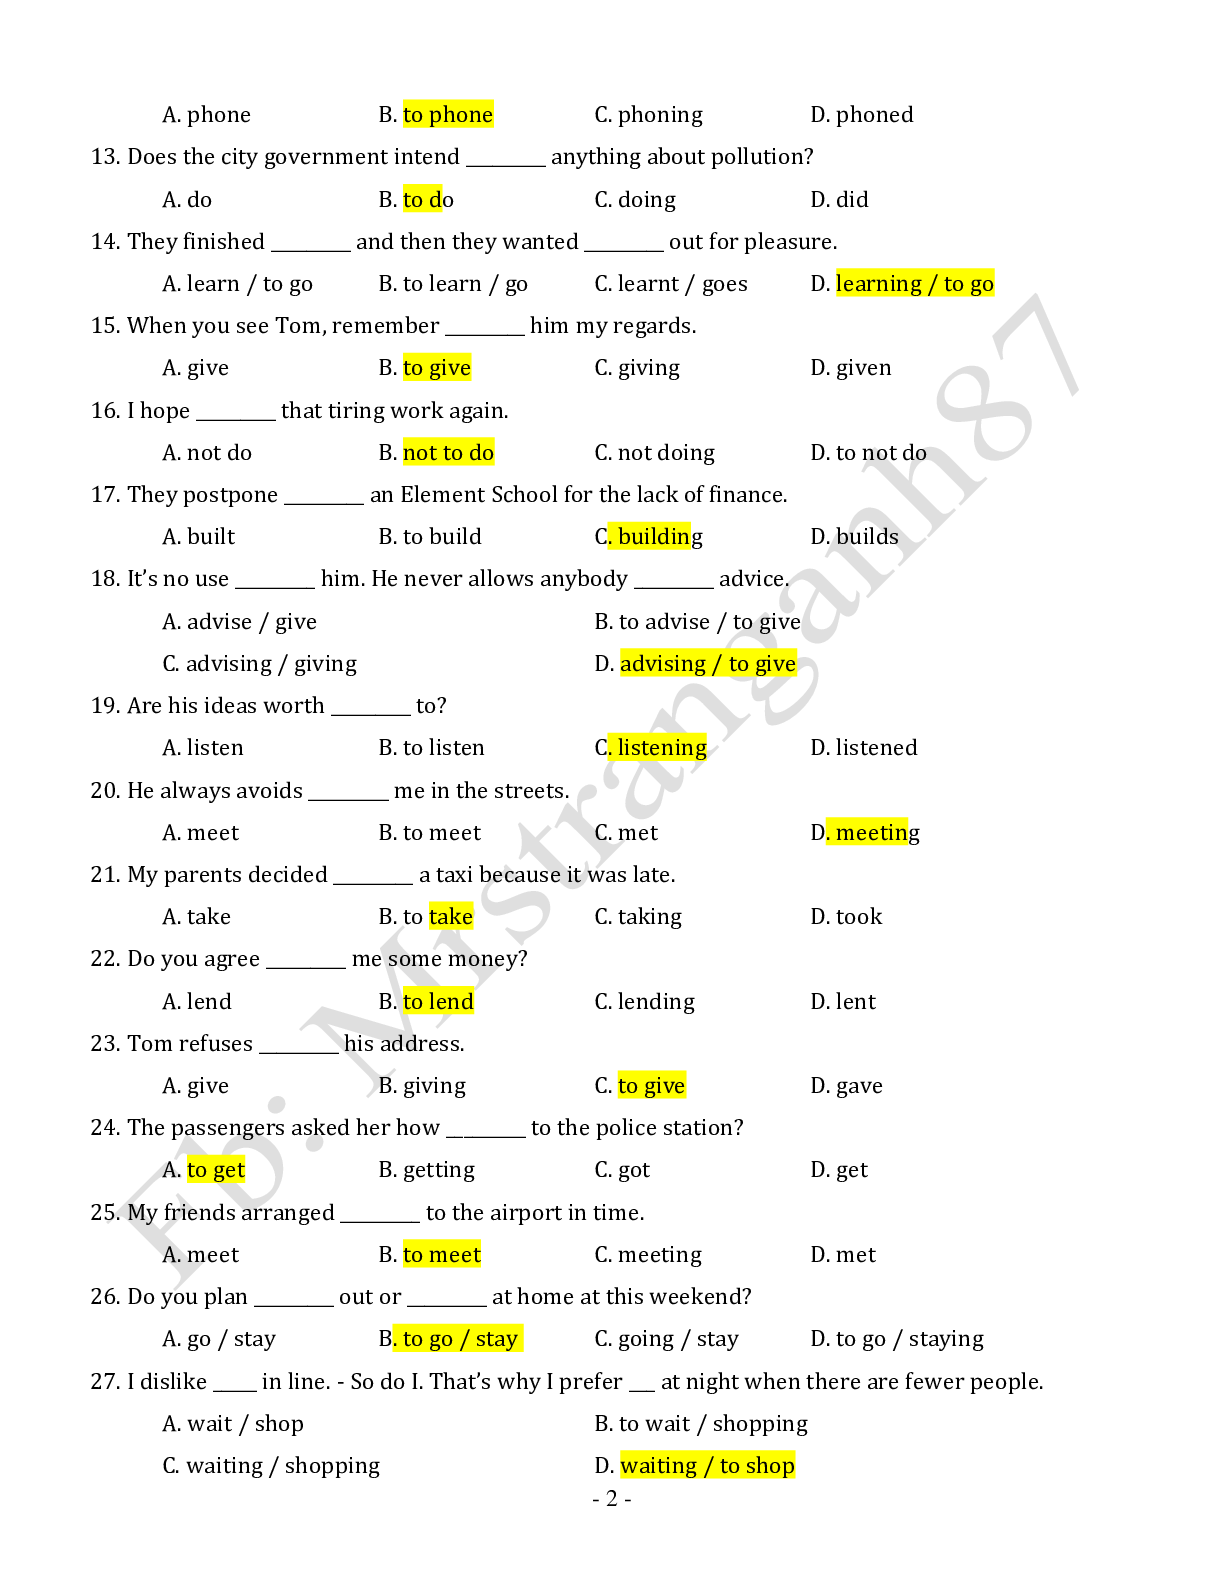 Chuyên đề: Danh động từ và động từ nguyên mẫu môn Tiếng Anh ôn thi THPTQG (trang 2)